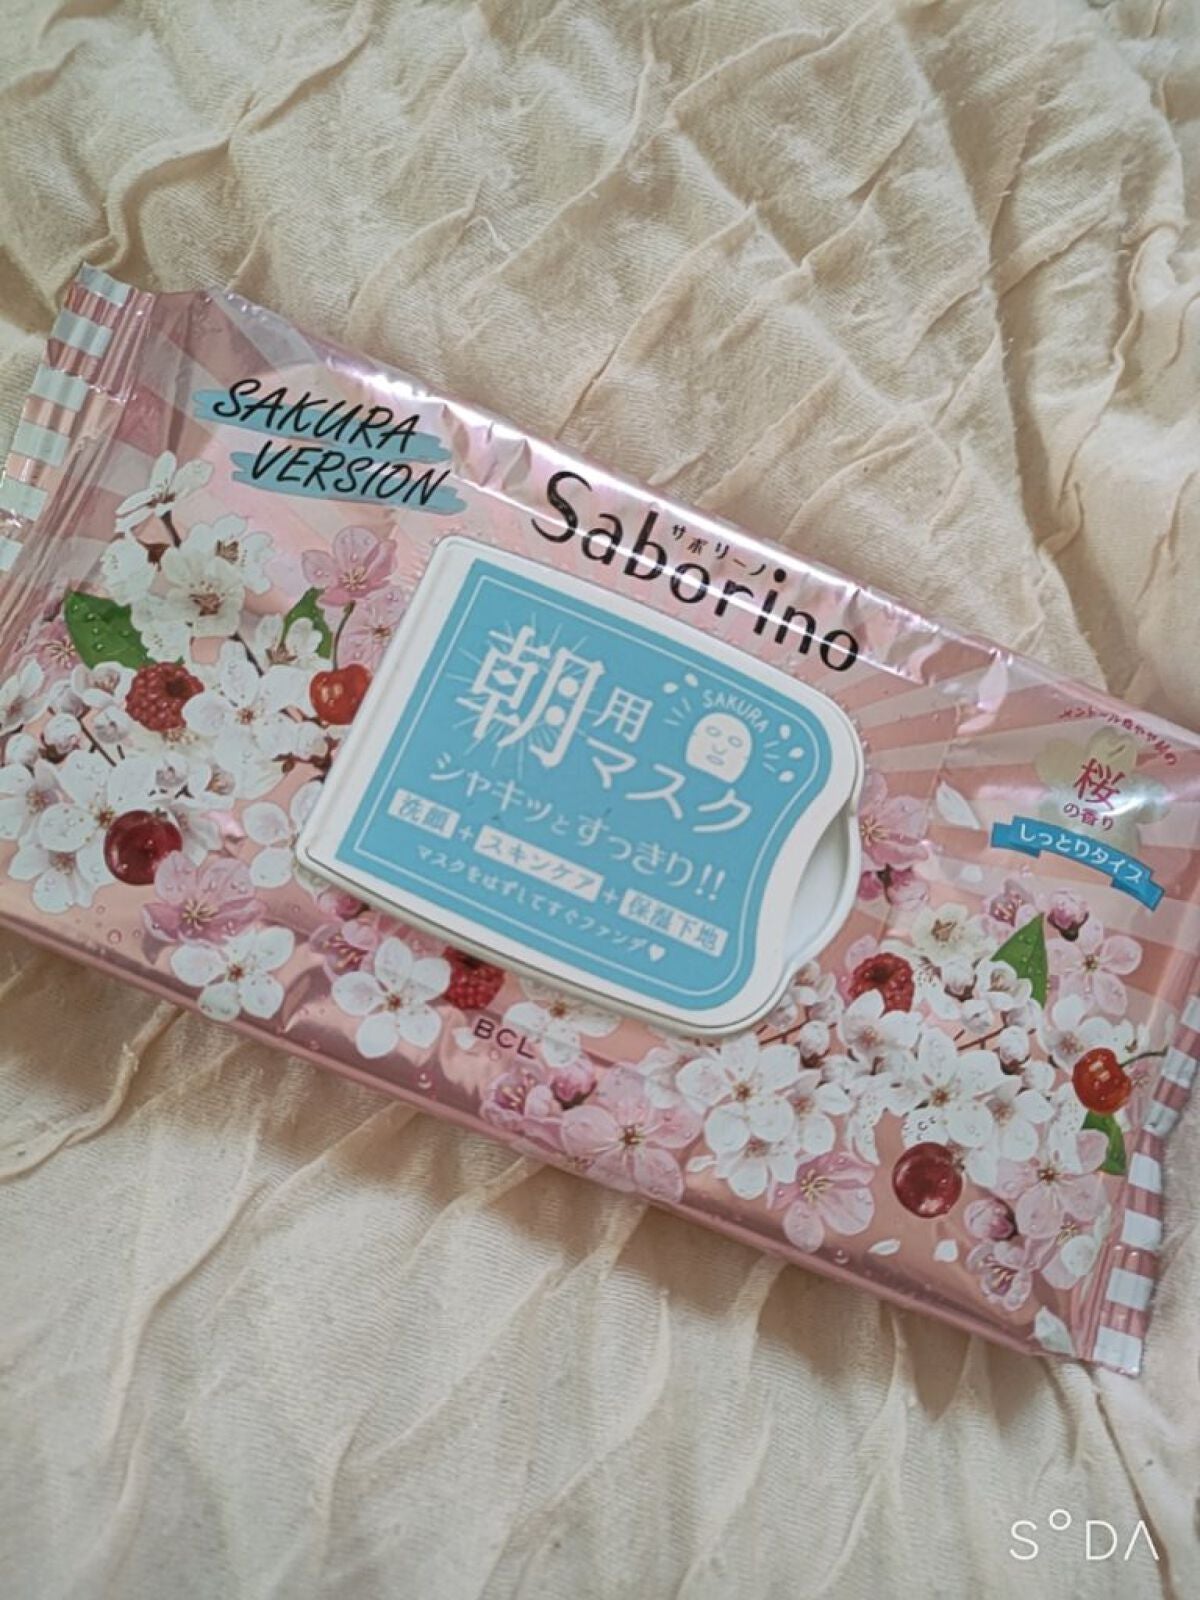 サボリーノ 目ざまシート SA 20（桜の香り）/サボリーノ/シートマスク・パックを使ったクチコミ（1枚目）